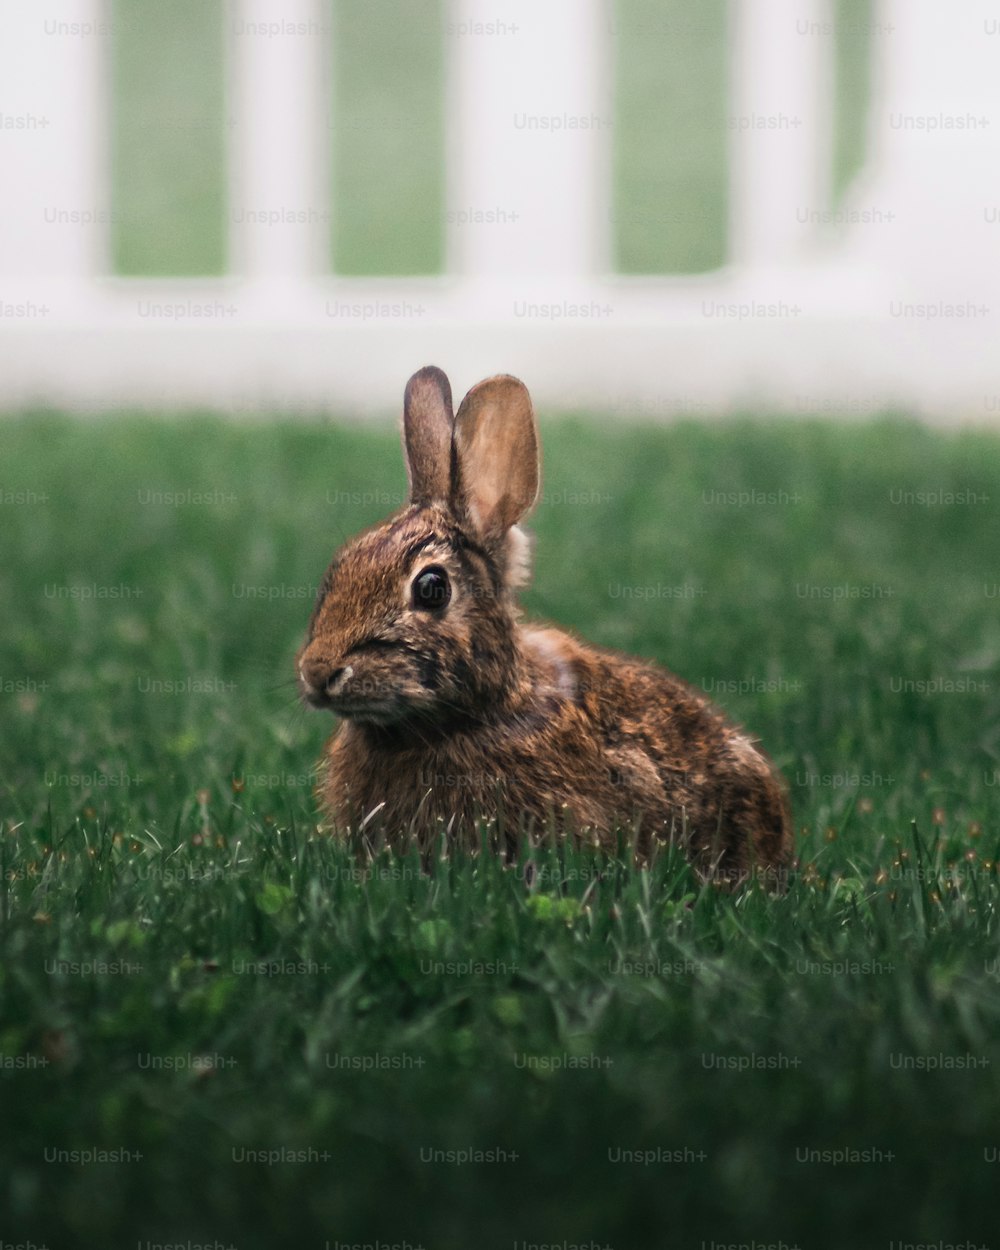 풀밭에 앉아 있는 작은 갈색 토끼